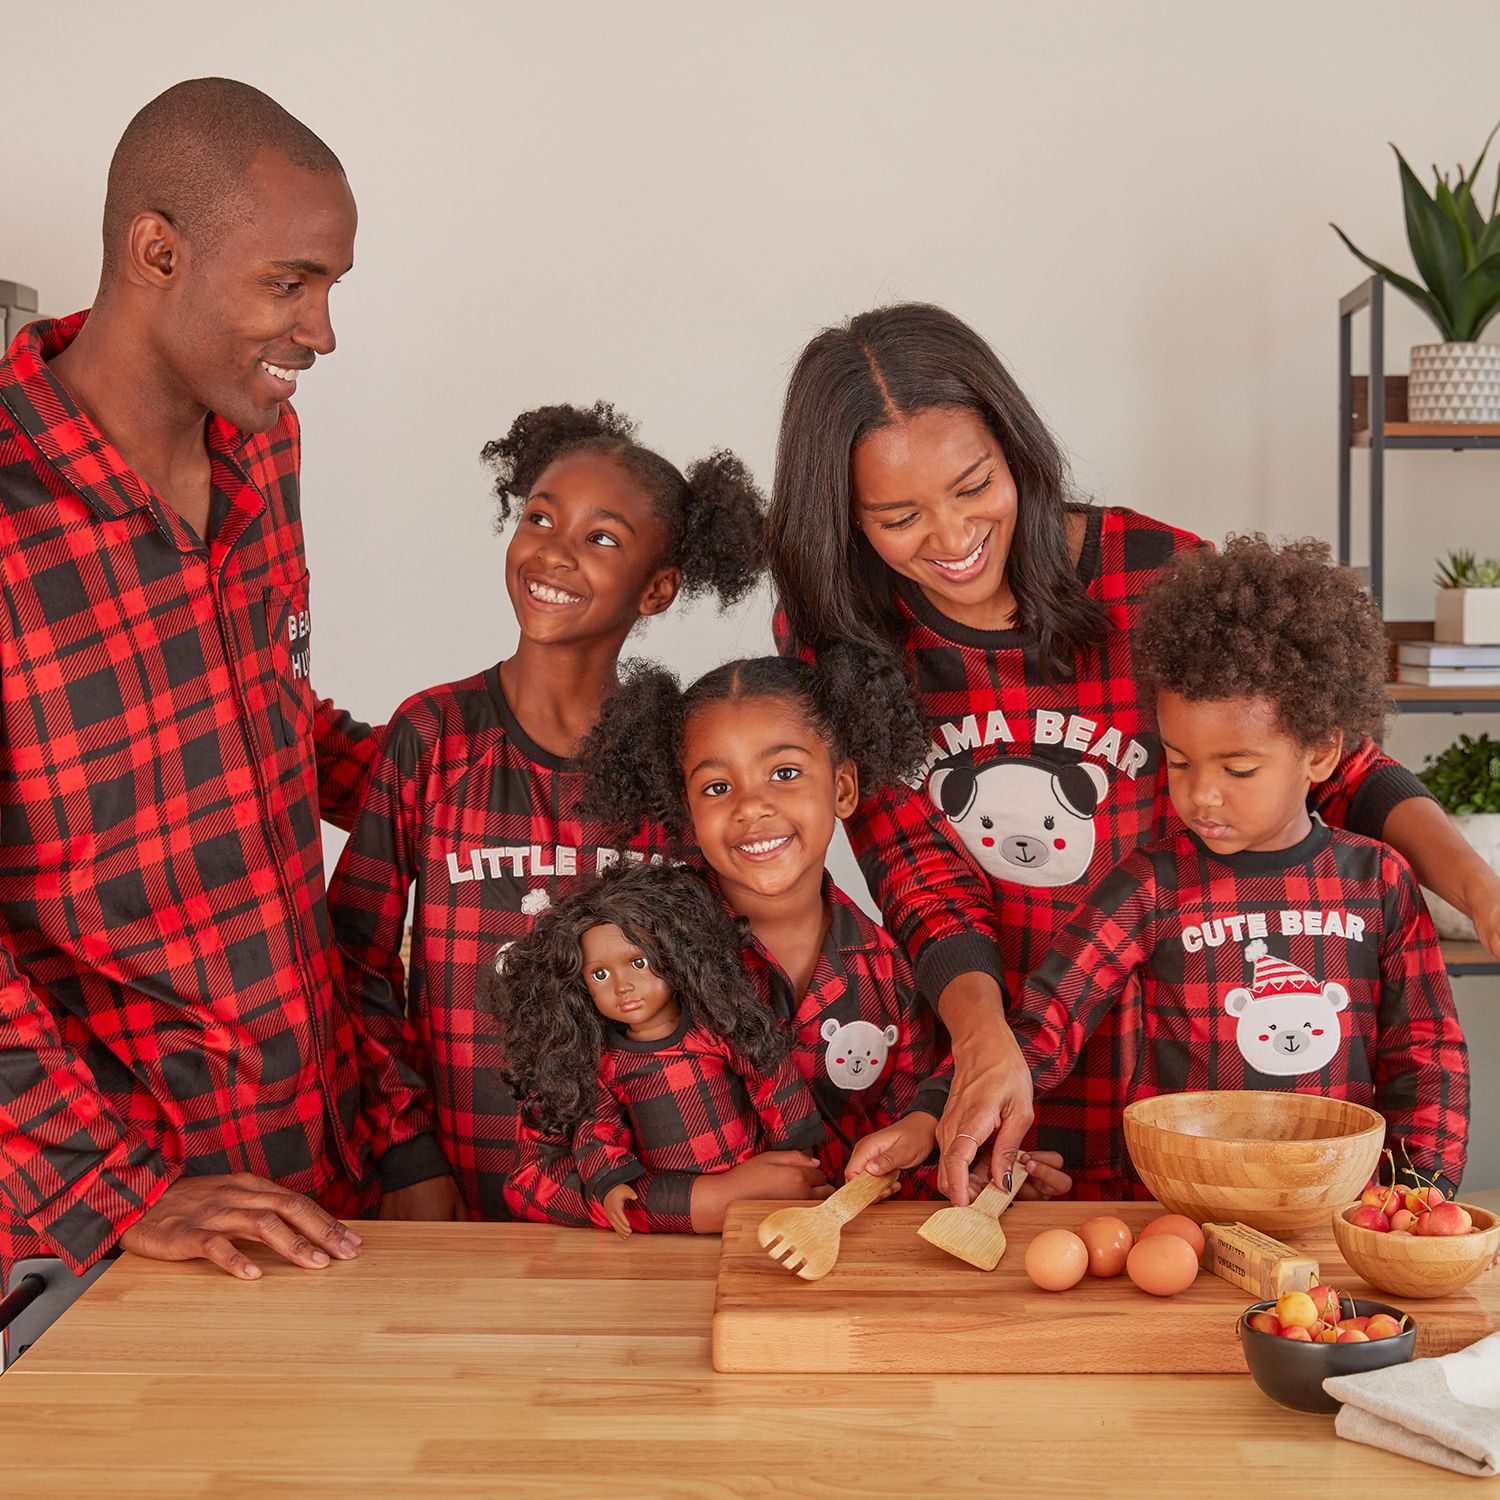 Family Pajamas Matching Sets - Snoopy Pajamas, Red, Pet Large